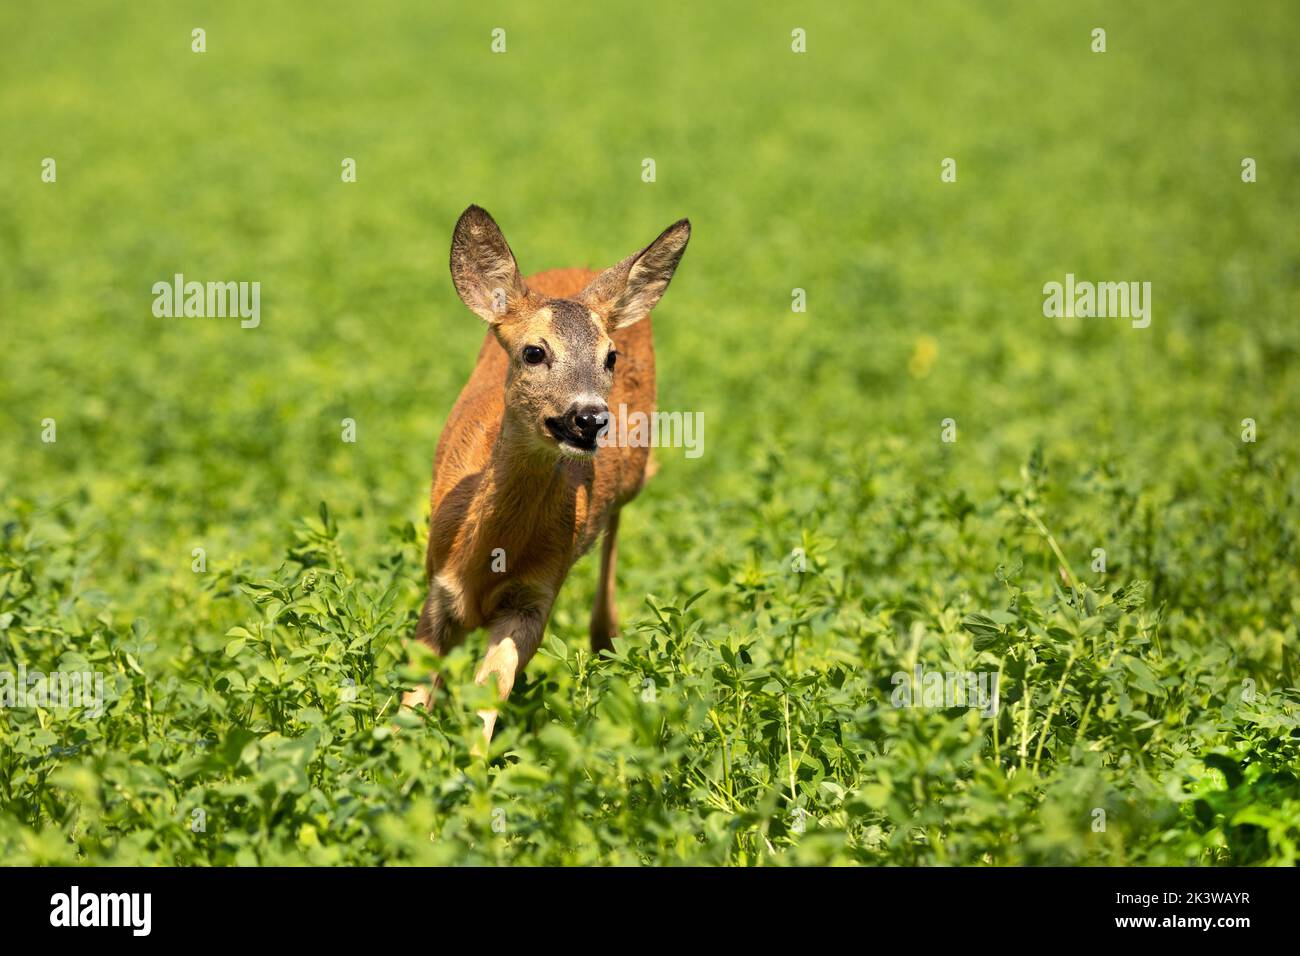 Roe deer, in the shamrock meadow. Roe deer, Capreolus capreolus, walking in the clover. Stock Photo